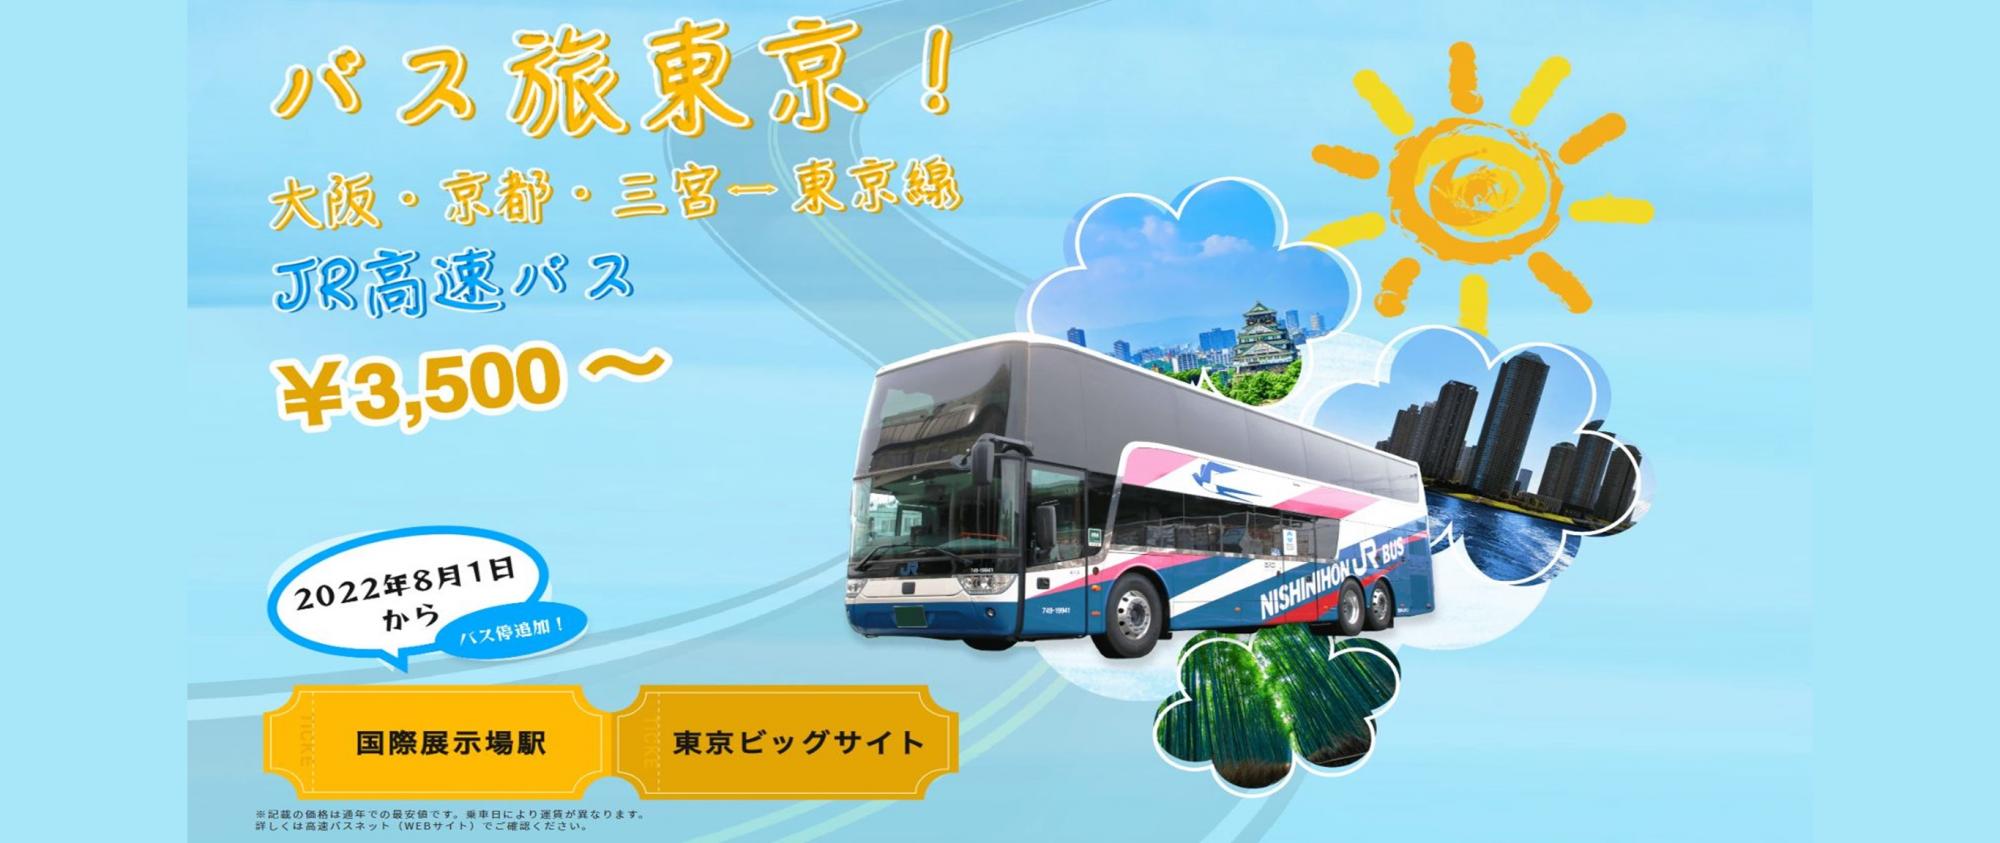 西日本jrバス 高速バス 夜行バス 定期観光バス バスツアー 一般路線バス 貸切バス